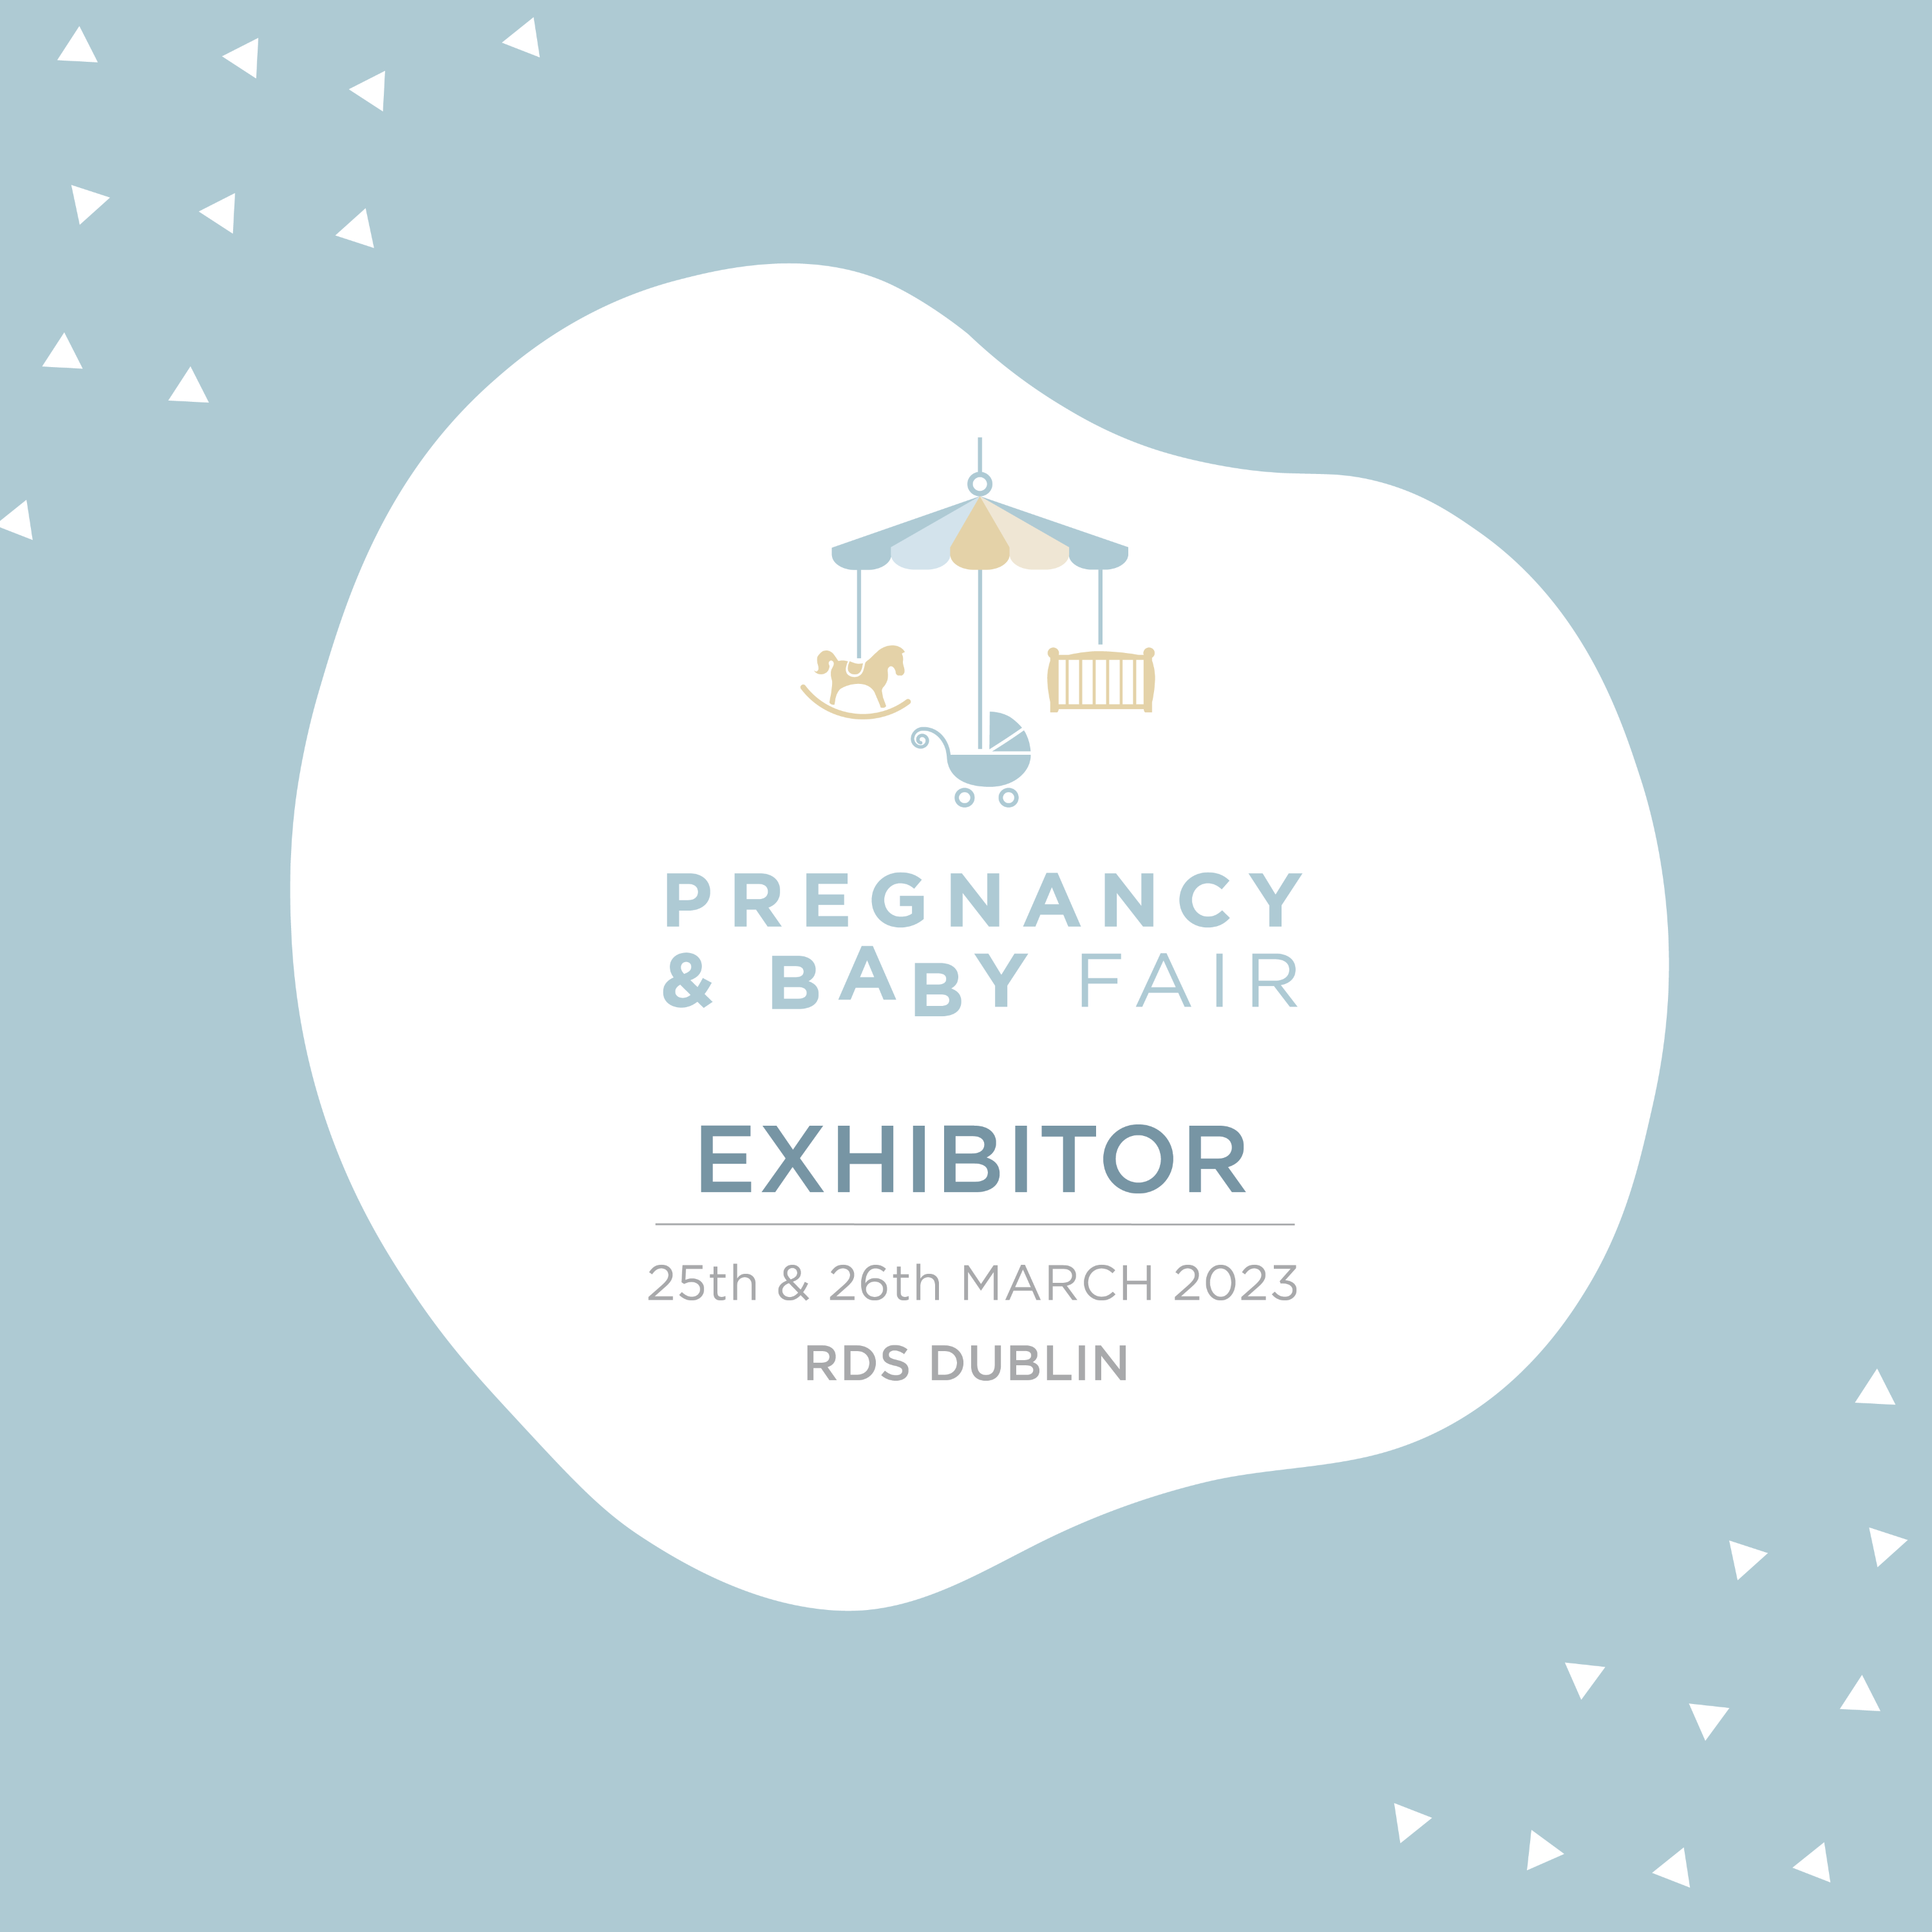 Meet us at the Pregnancy & Baby Fair